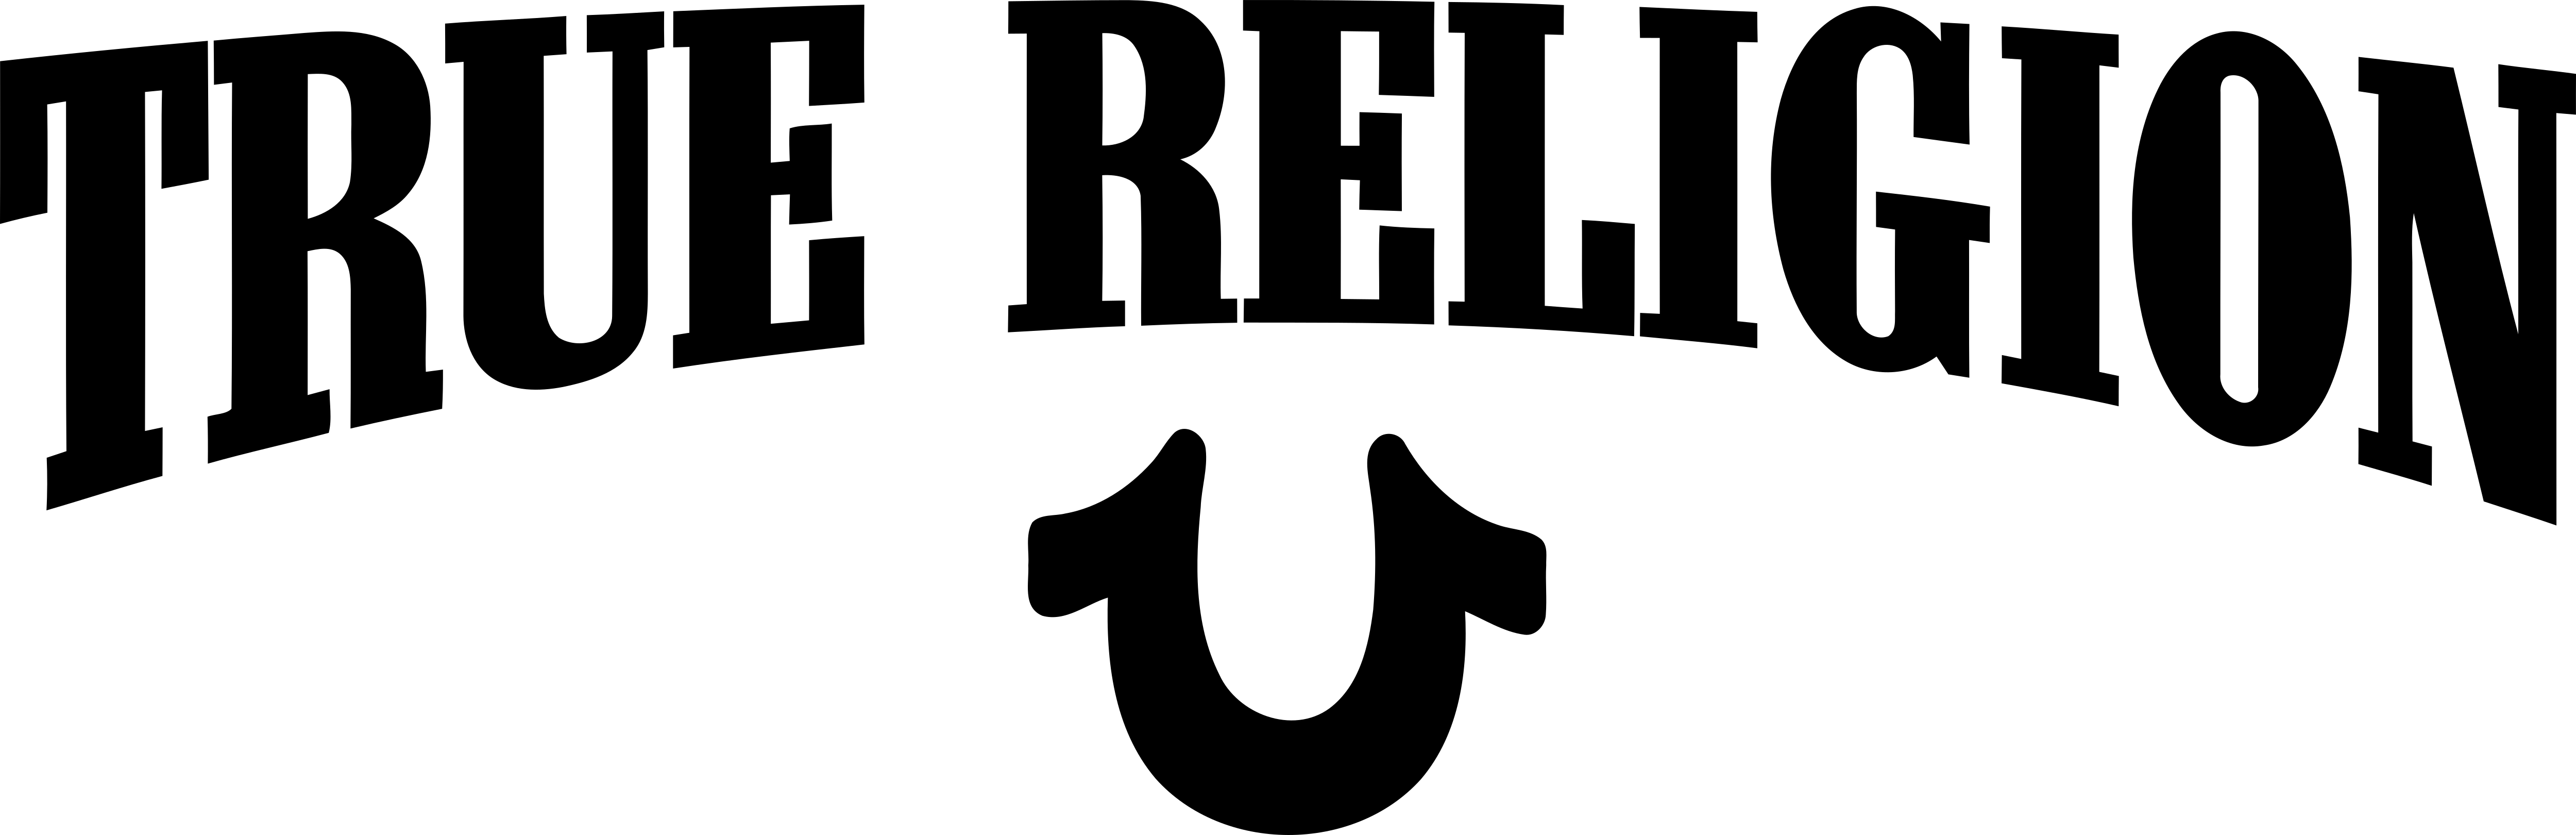 true religion brand logo